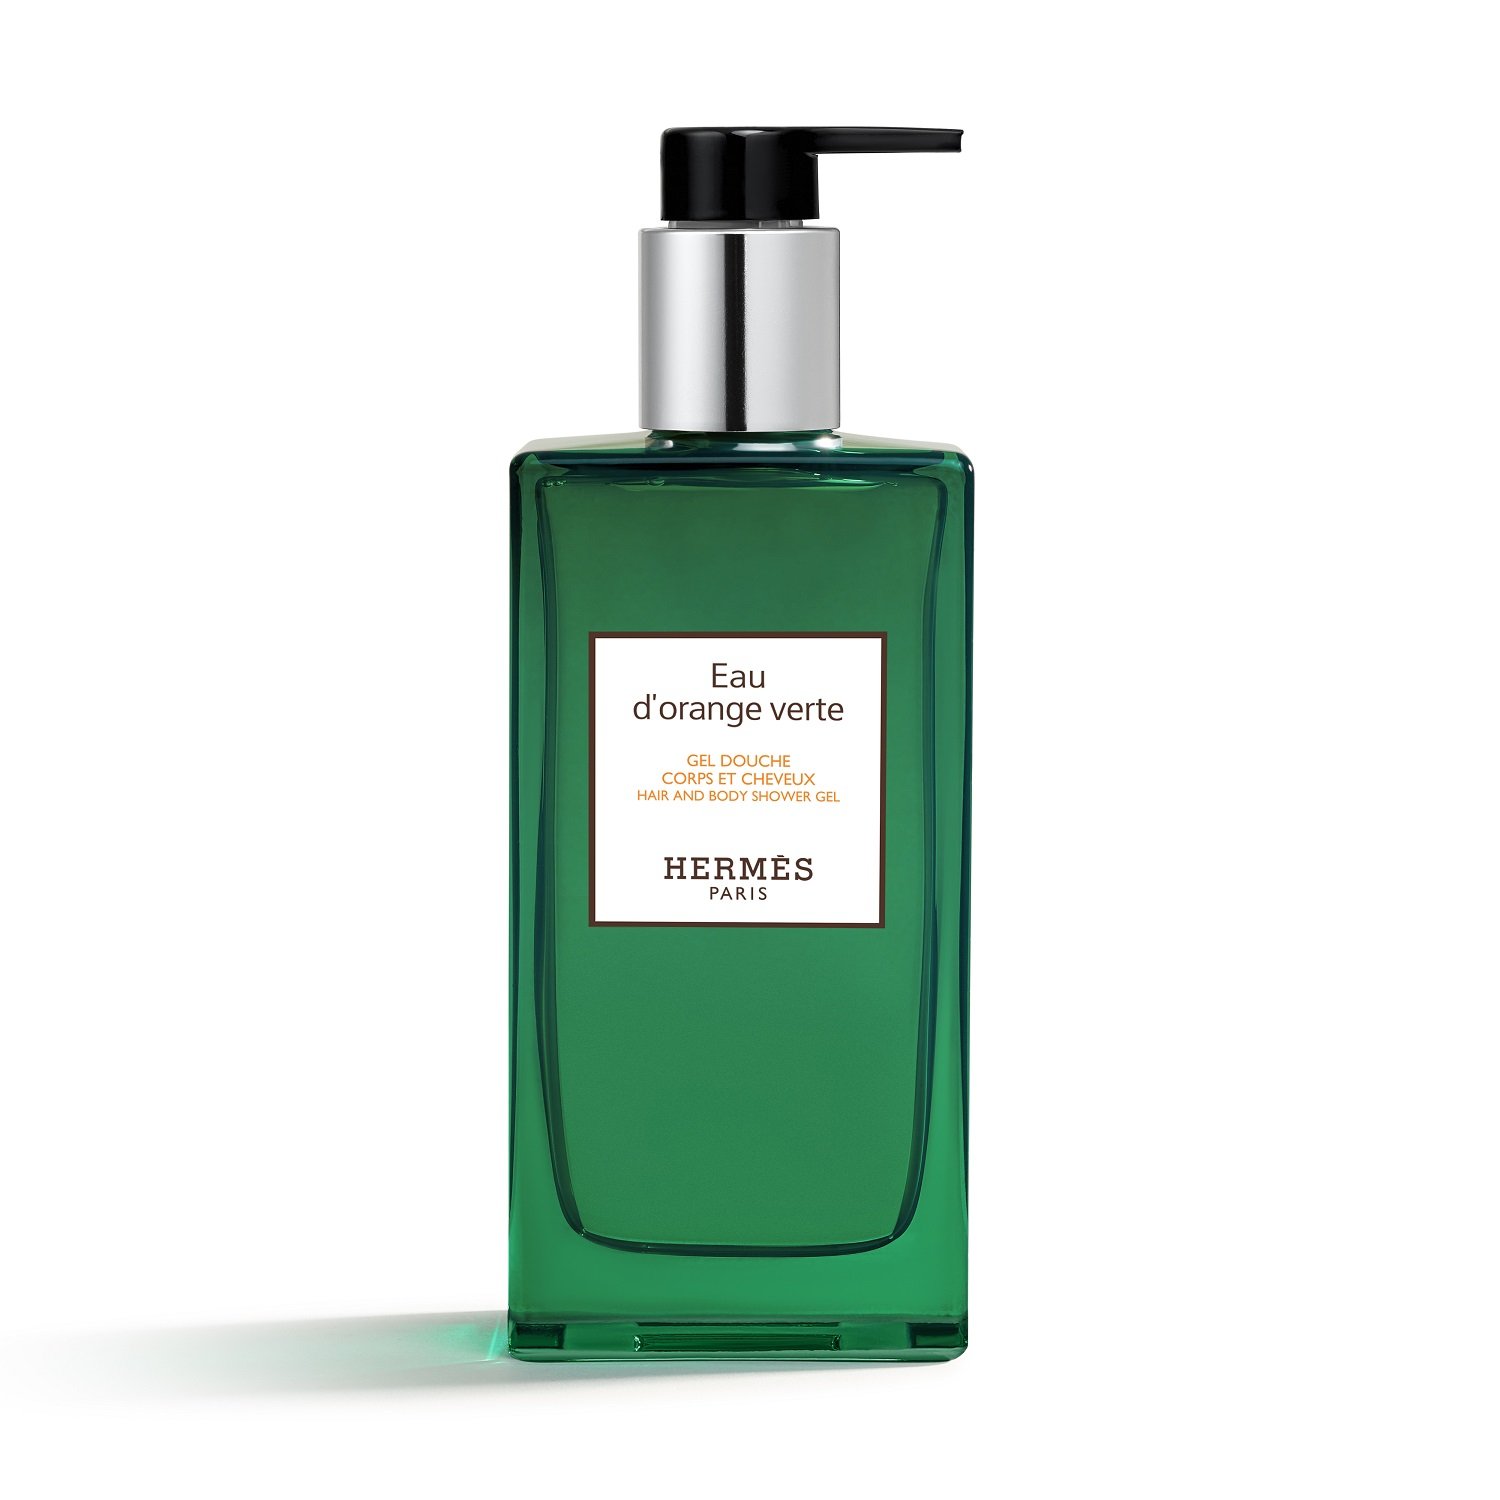 Le Bain Hermès - Eau d'orange verte - Hair and body shower gel © Studio des fleurs.jpg